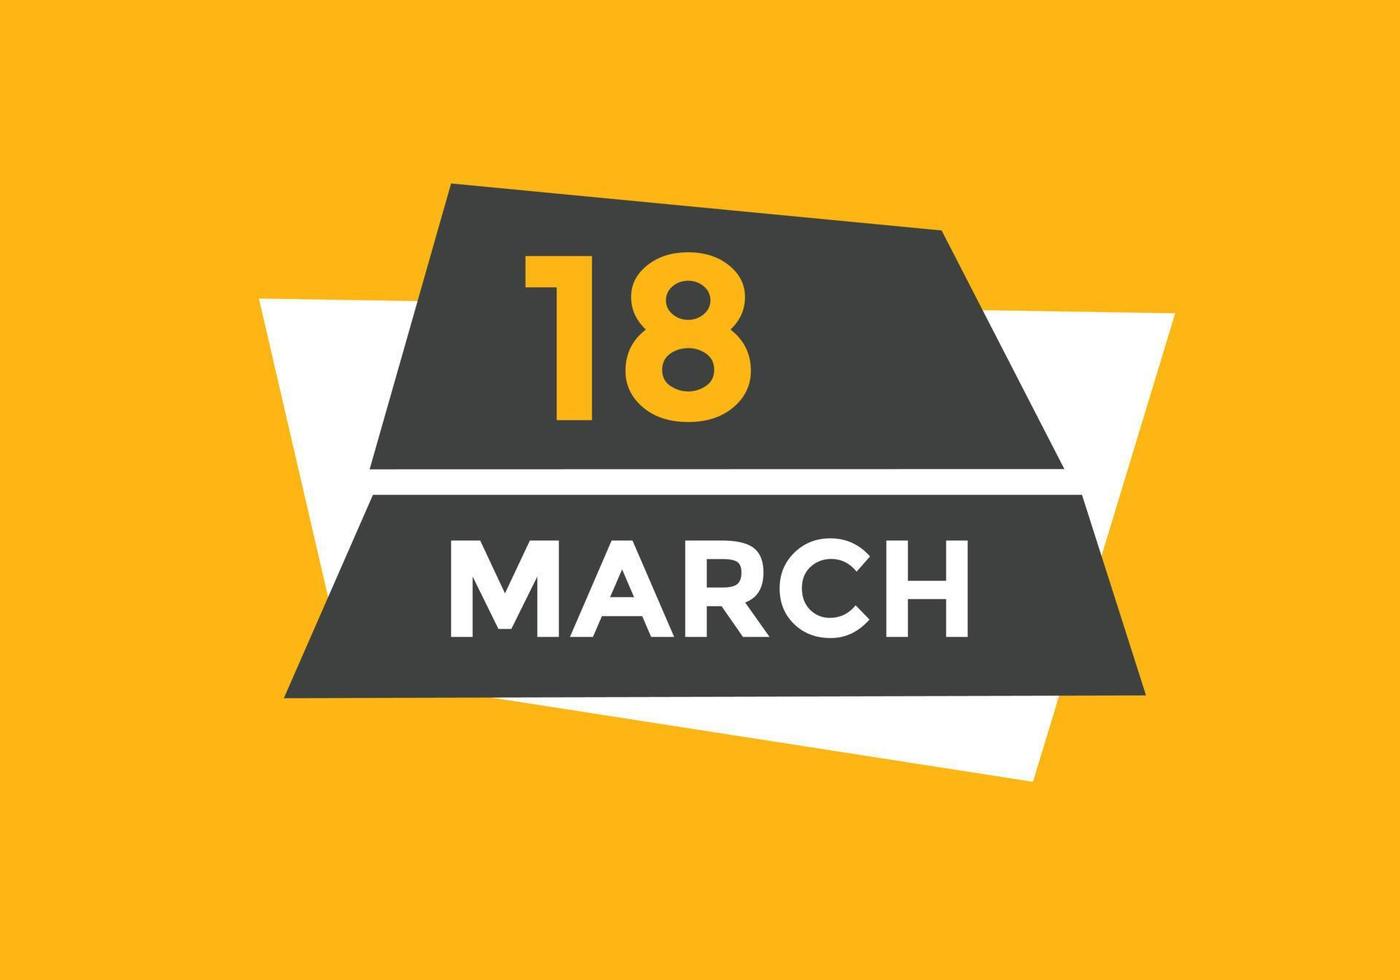 rappel du calendrier du 18 mars. Modèle d'icône de calendrier quotidien du 18 mars. modèle de conception d'icône calendrier 18 mars. illustration vectorielle vecteur